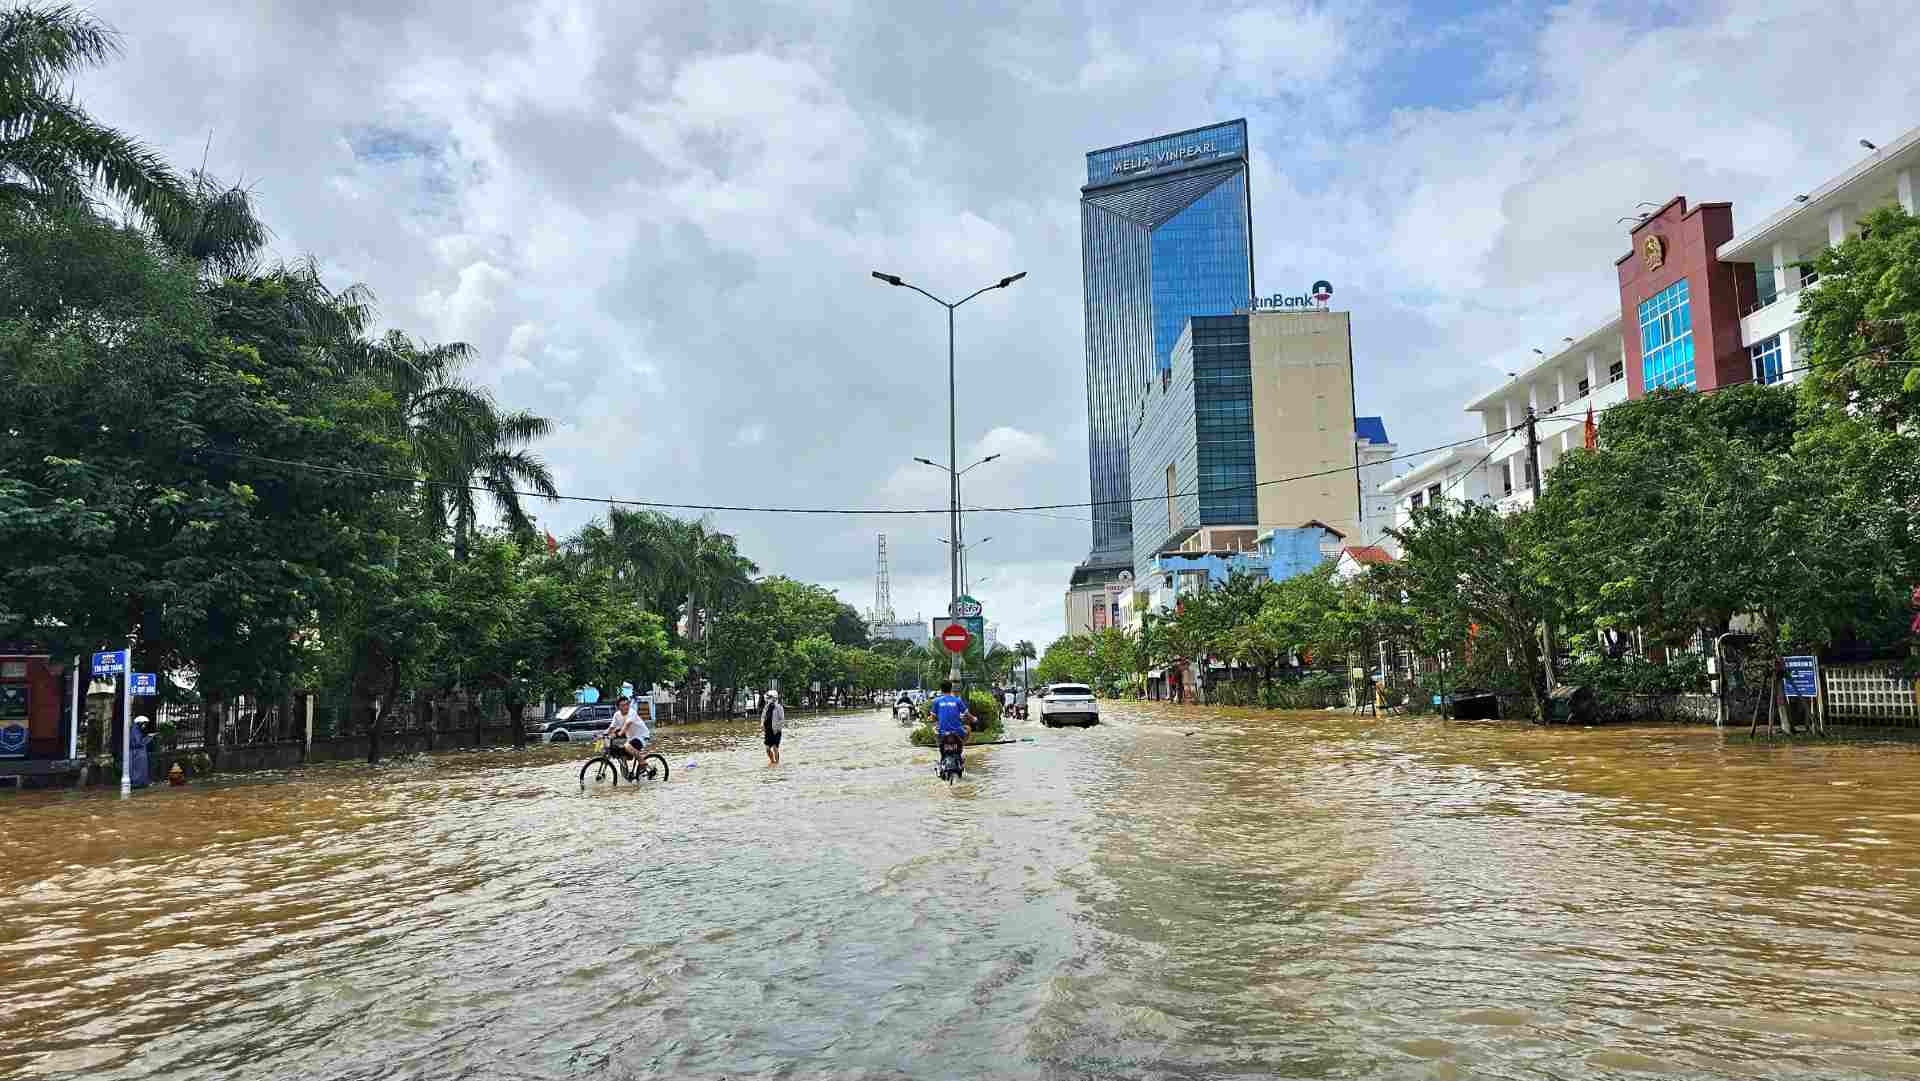 Mưa lớn kèm theo các hồ chứa xả lũ đã làm cho nhiều địa phương ở tỉnh Thừa Thiên Huế bị ngập sâu trong nước lũ trong những ngày 14, và 15. 11.